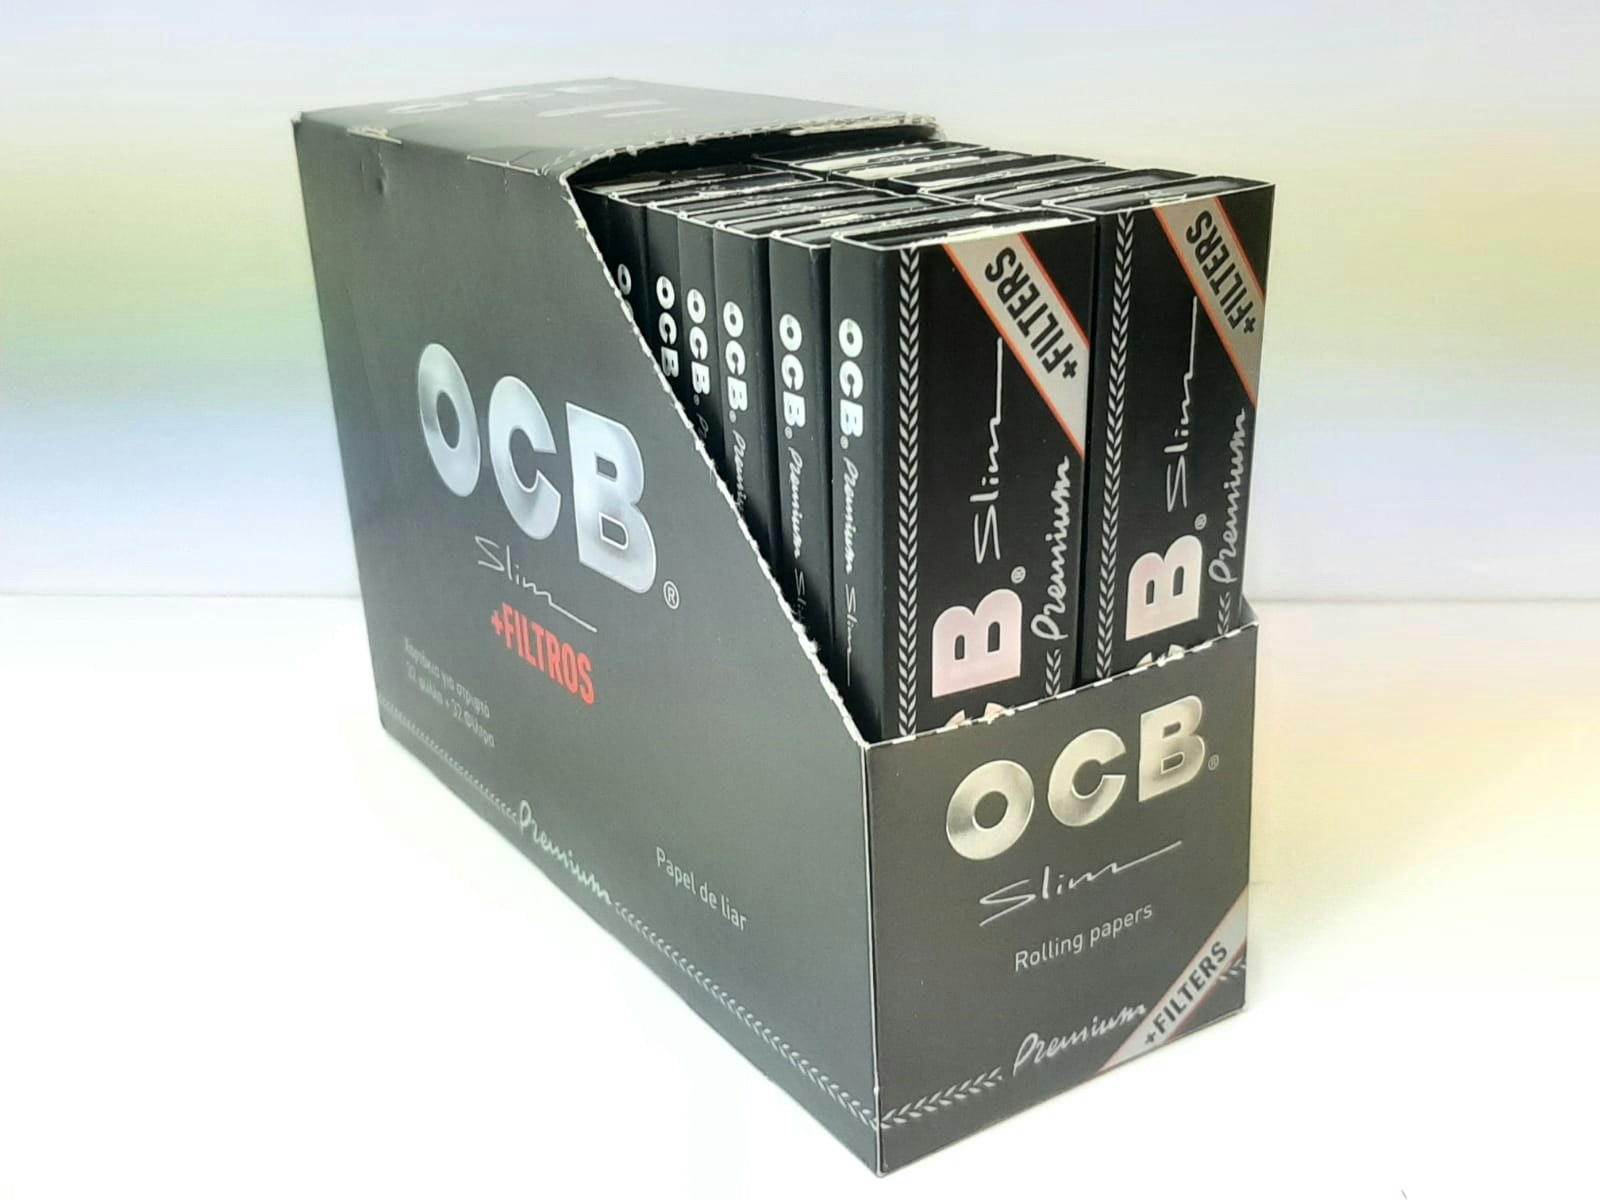 OCB Kingsize Slim+Filter 5 st (cigarettpapper)